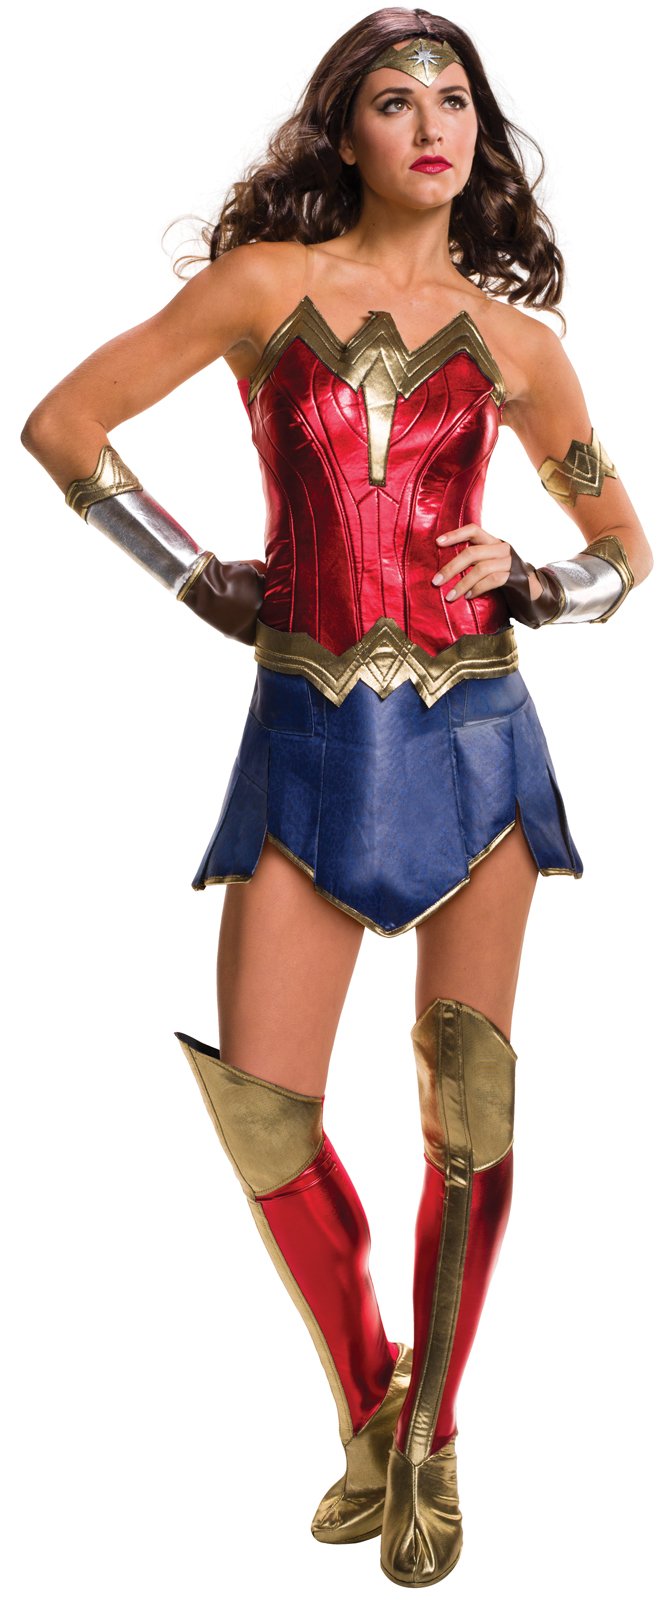 Licensed Teen Wonder Woman Costume 90